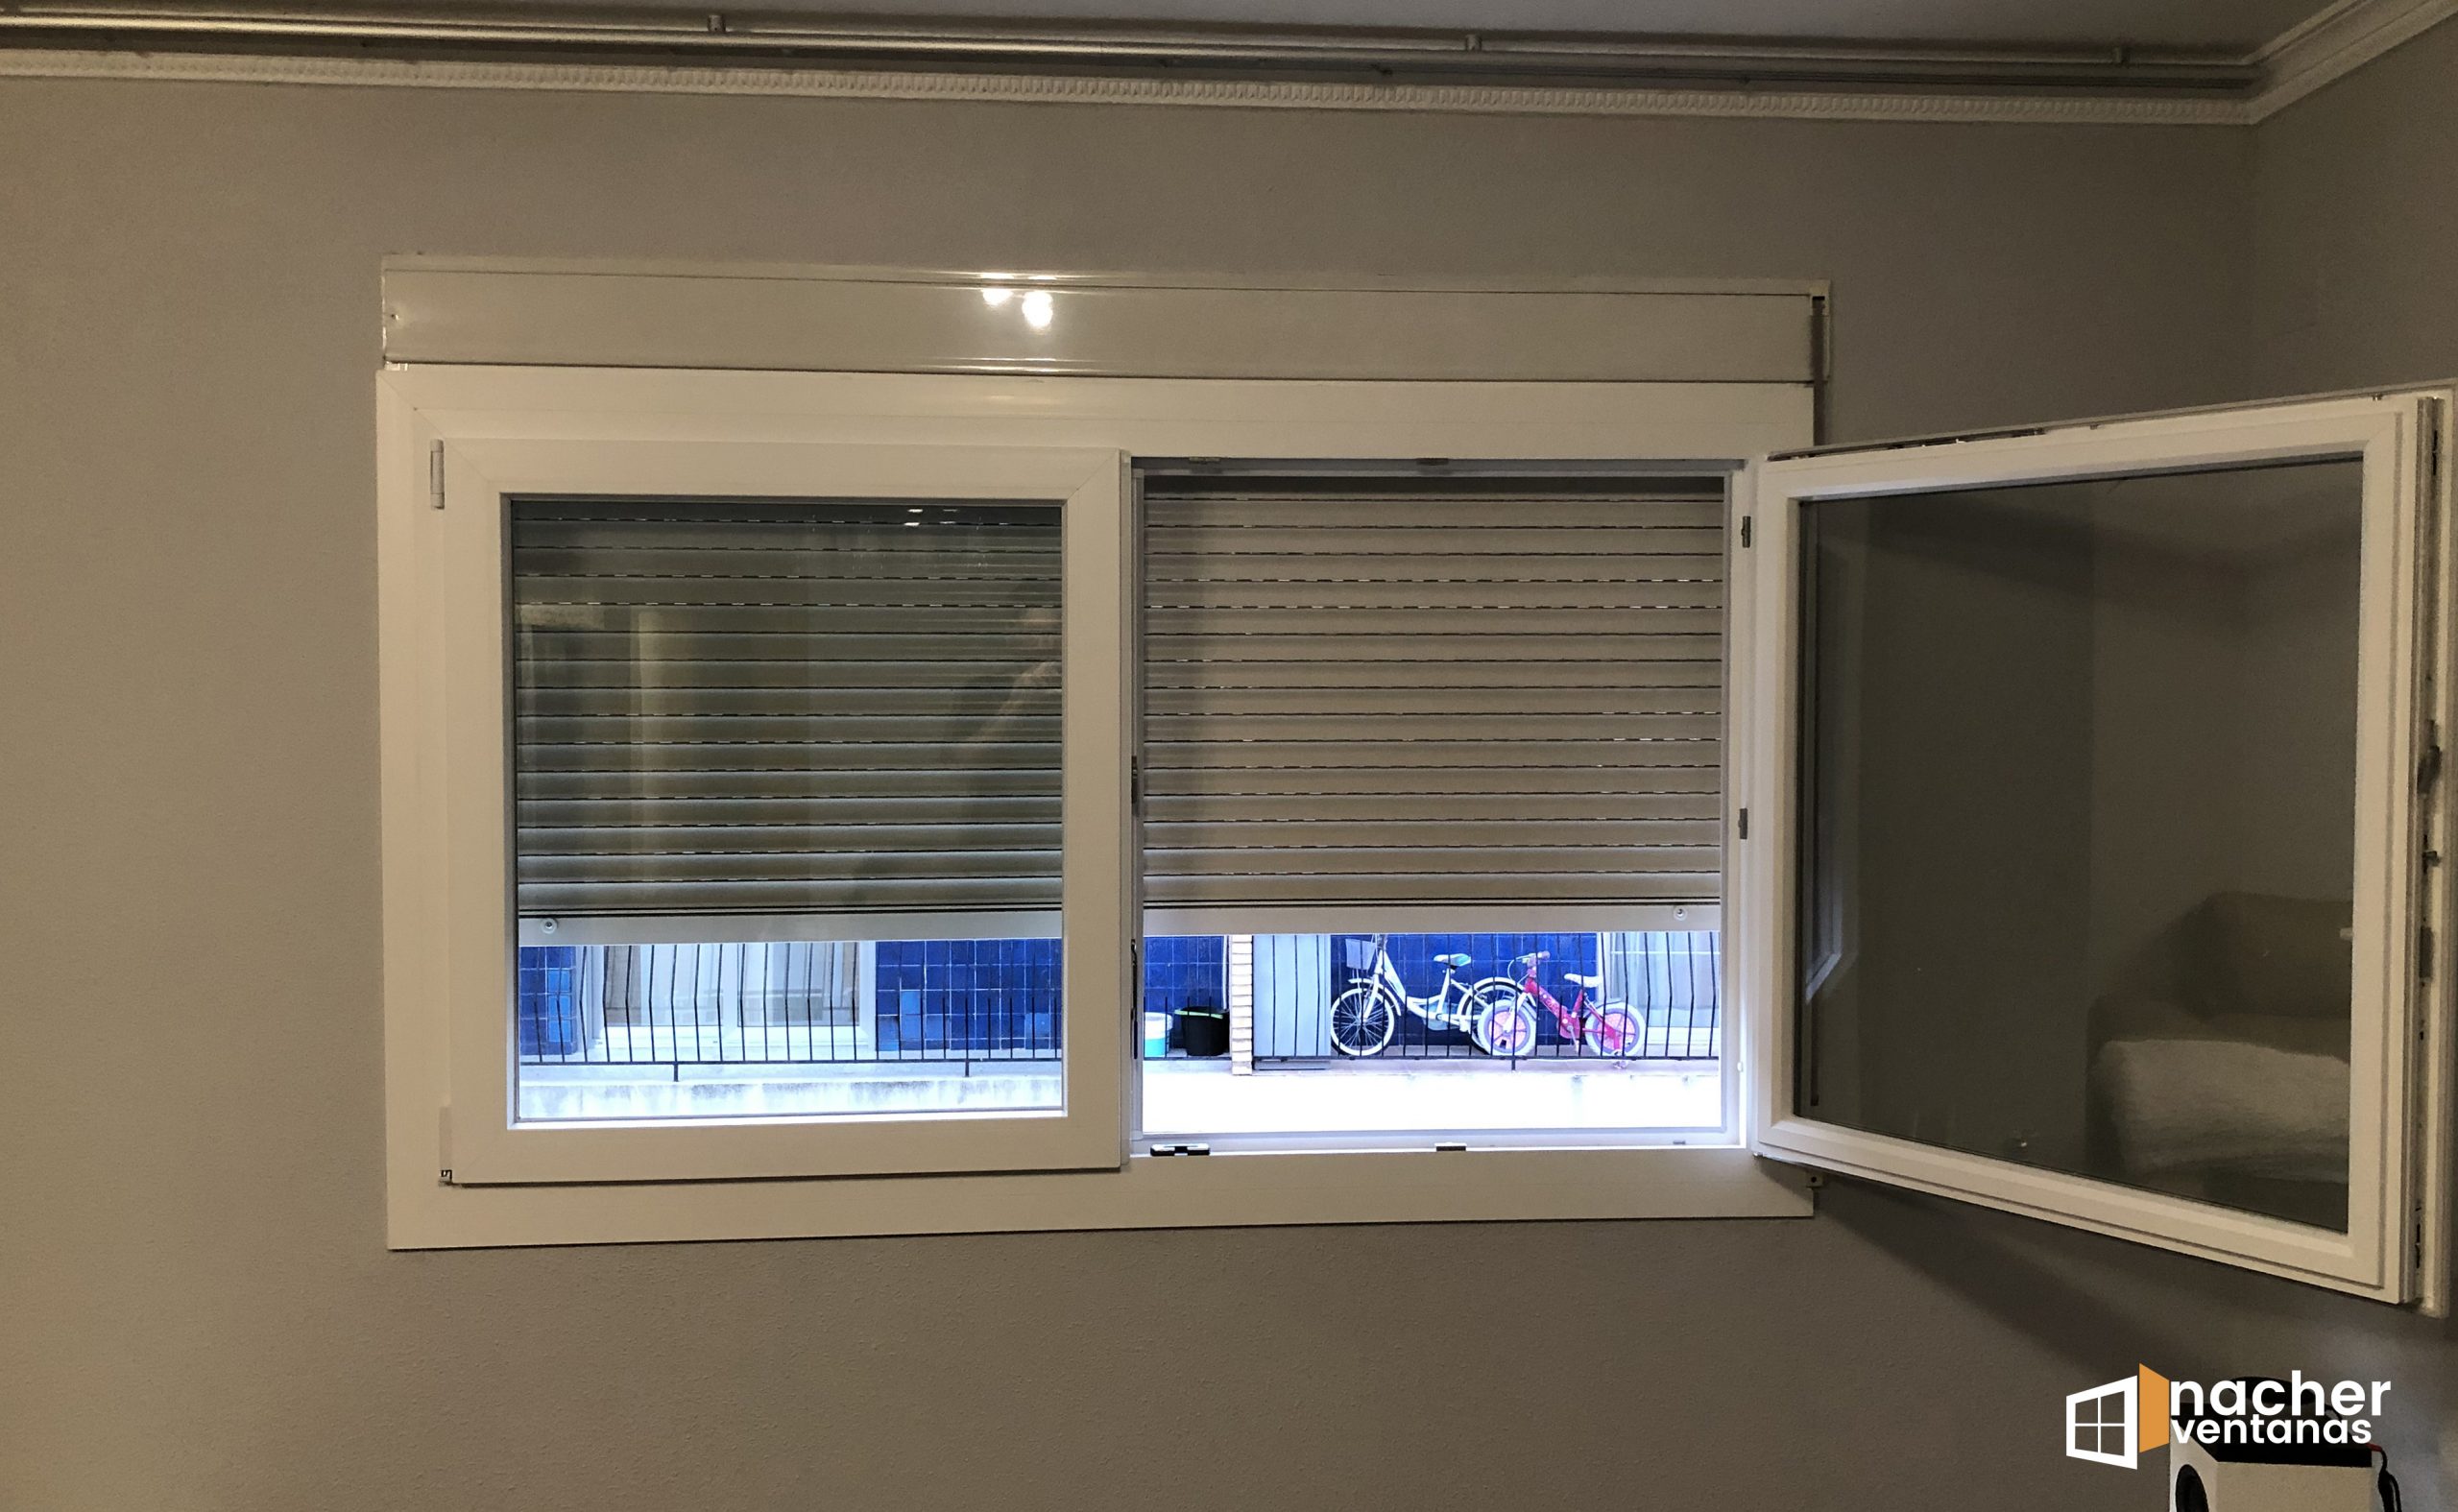 Aislamiento acústico con ventanas de PVC – GronCR